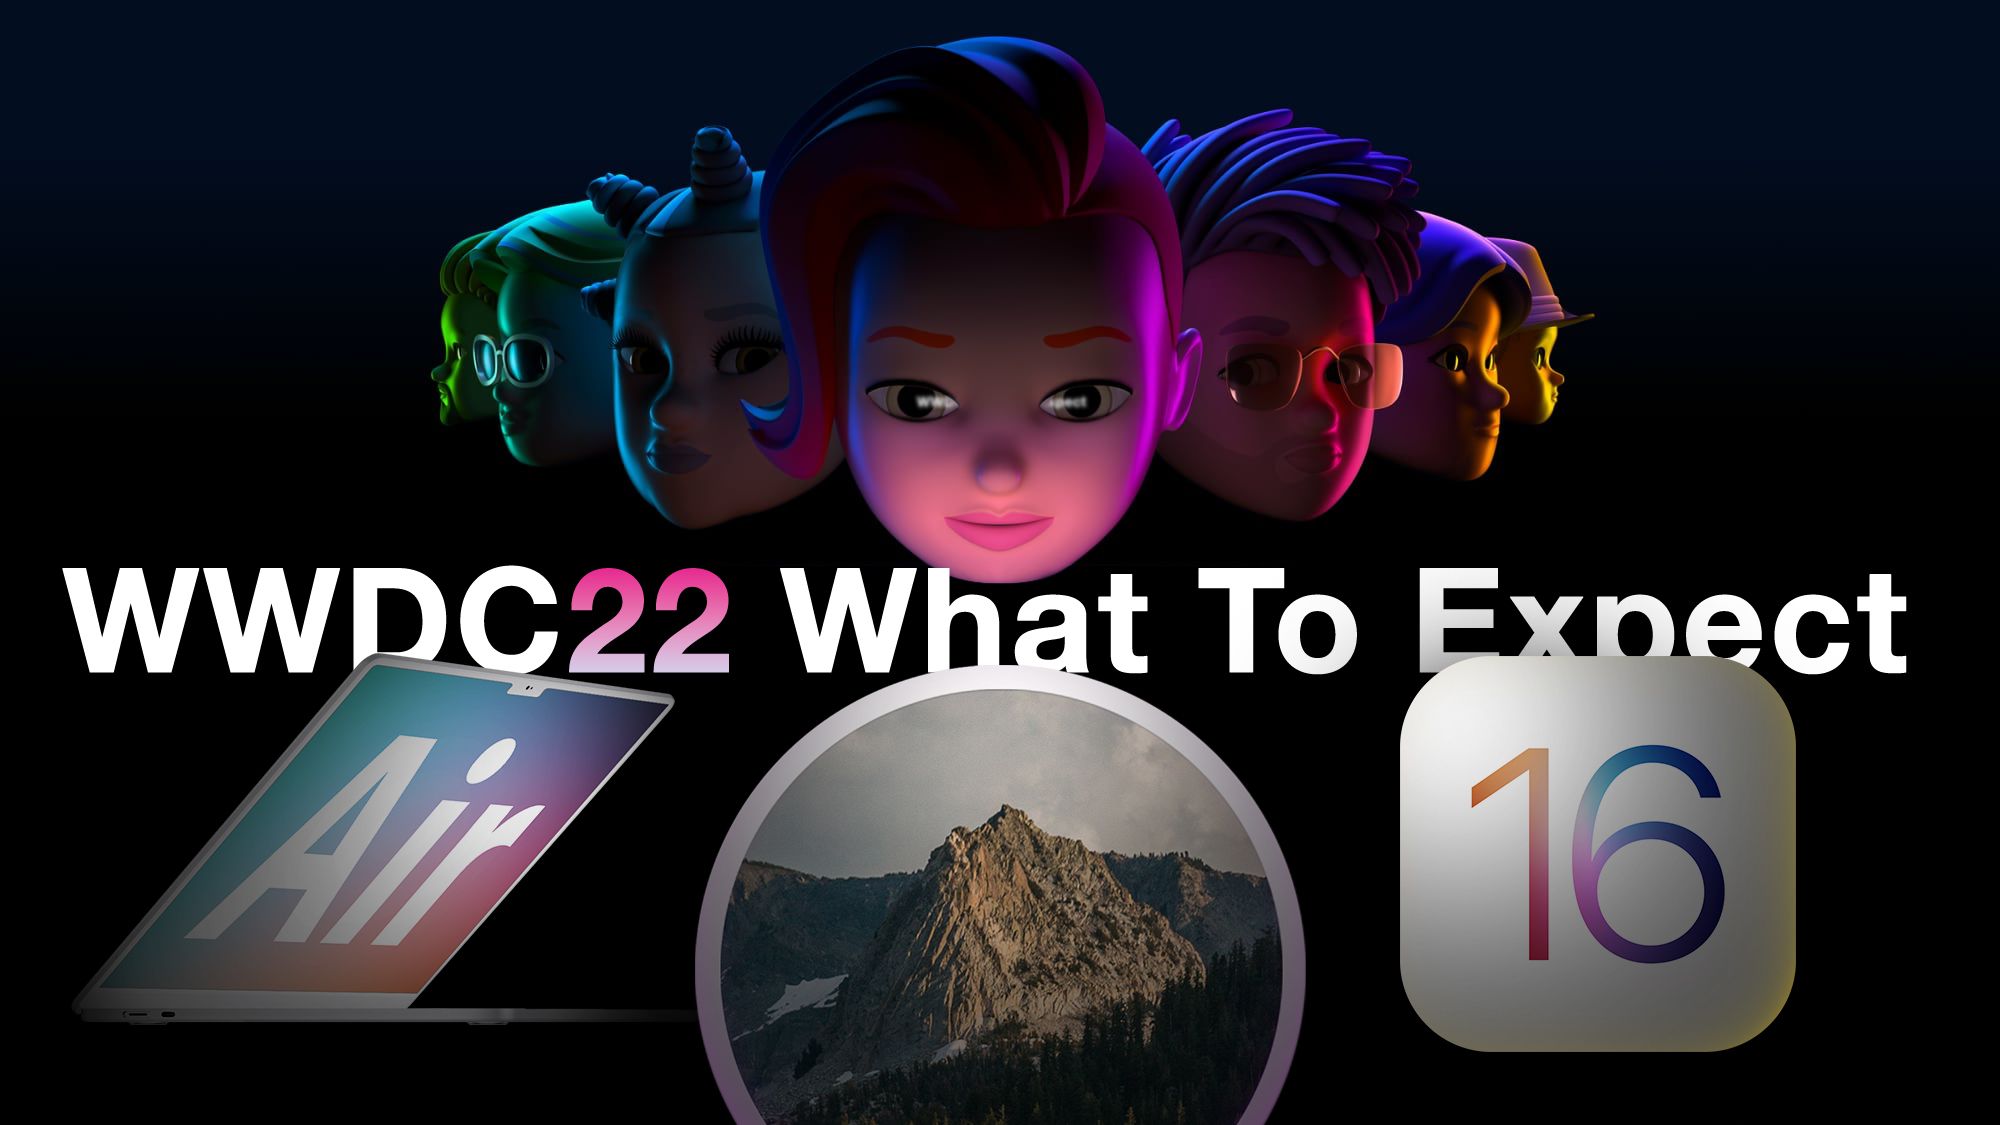 ما يمكن توقعه في WWDC 2022: iOS 16 و macOS 13 و watchOS 9 وربما أجهزة Mac جديدة